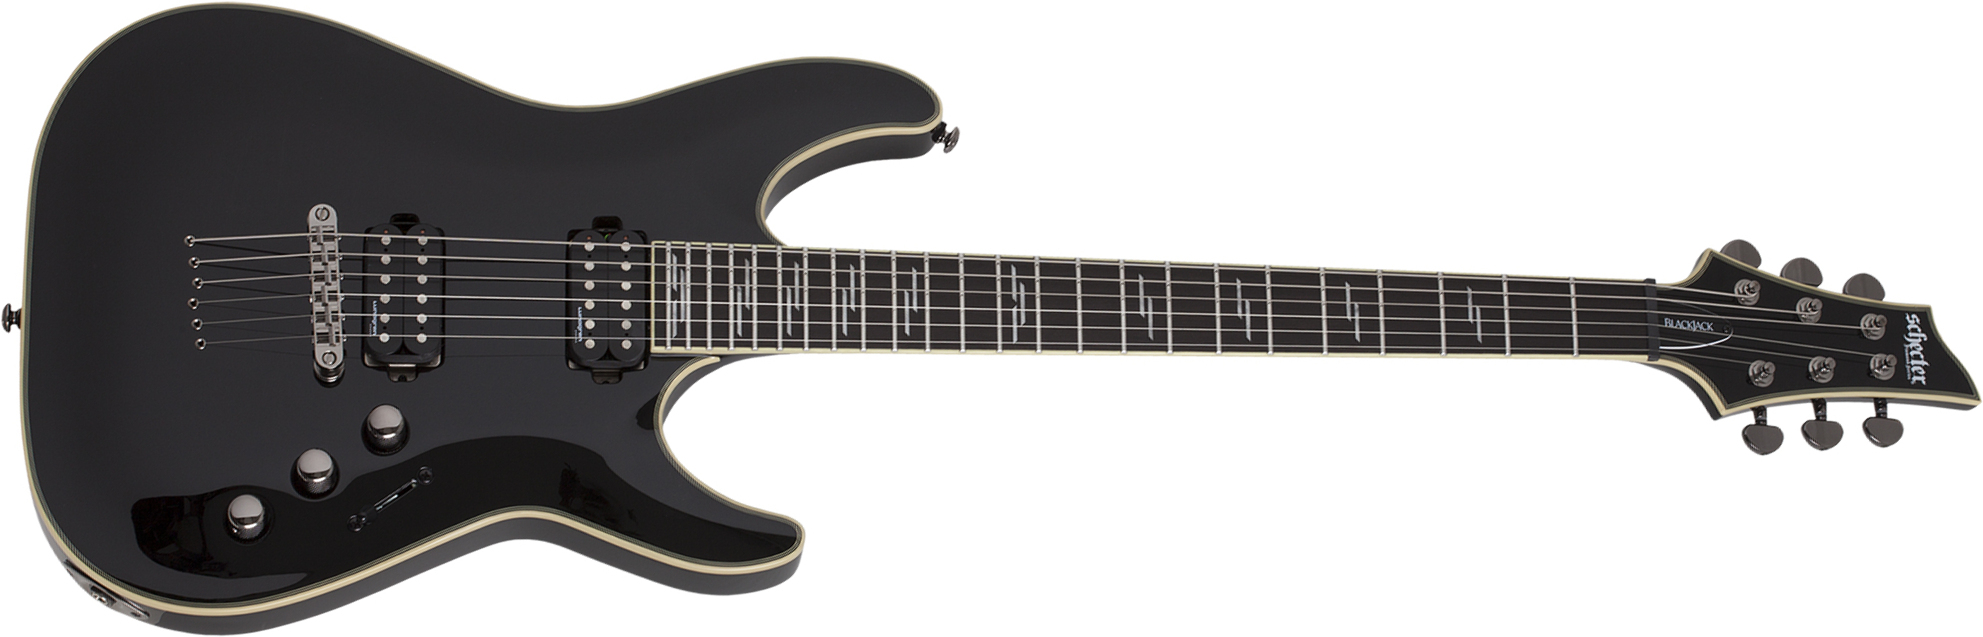 Schecter C-1 Blackjack 2h Lundgren Ht Eb - Black - Str shape electric guitar - Main picture